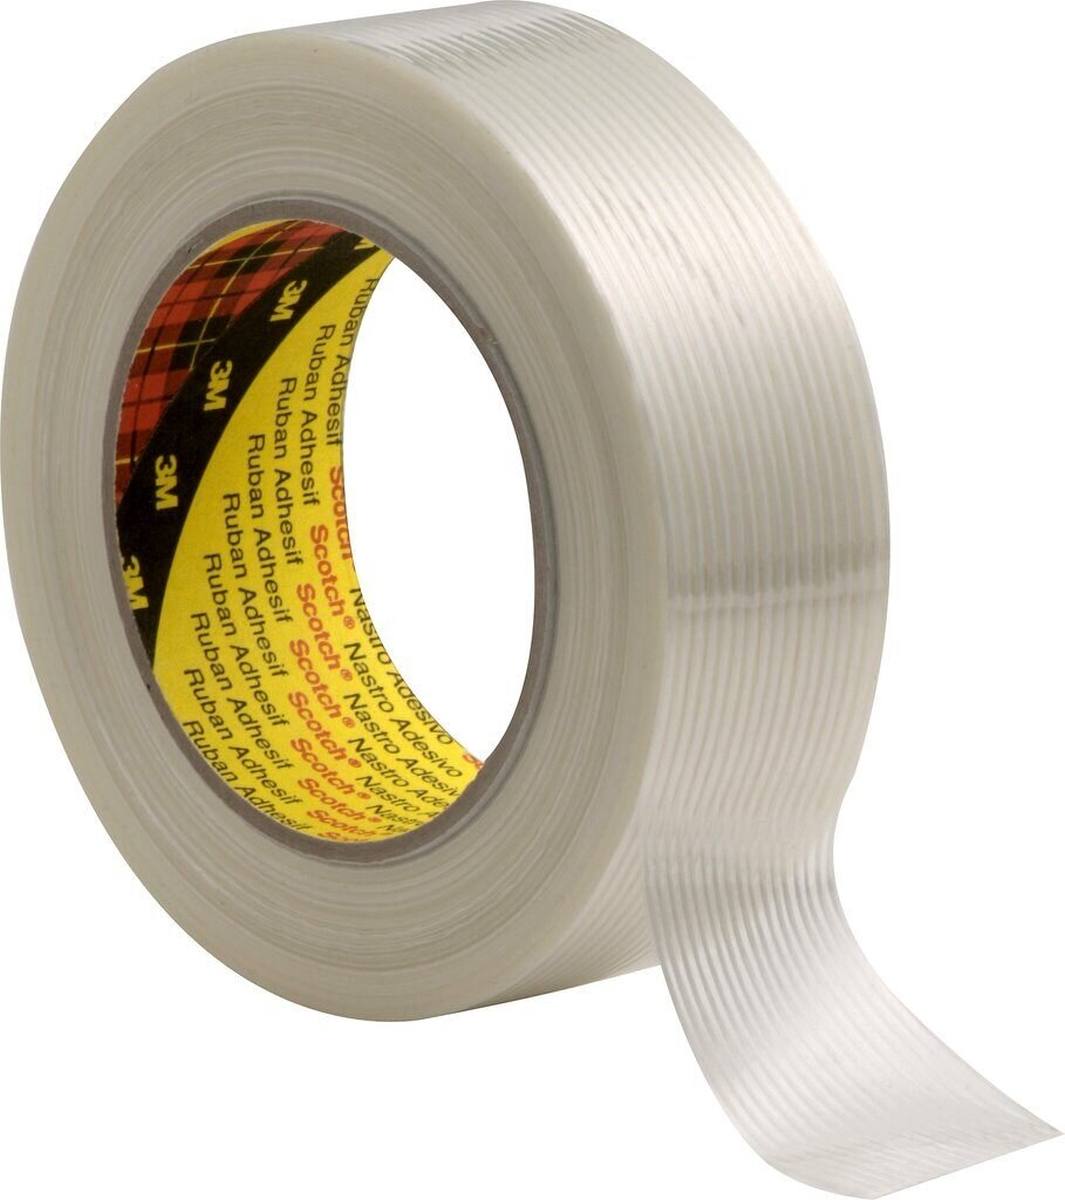 3M Scotch nastro adesivo in filamenti 8956, trasparente, 25 mm x 50 m, 0,131 mm